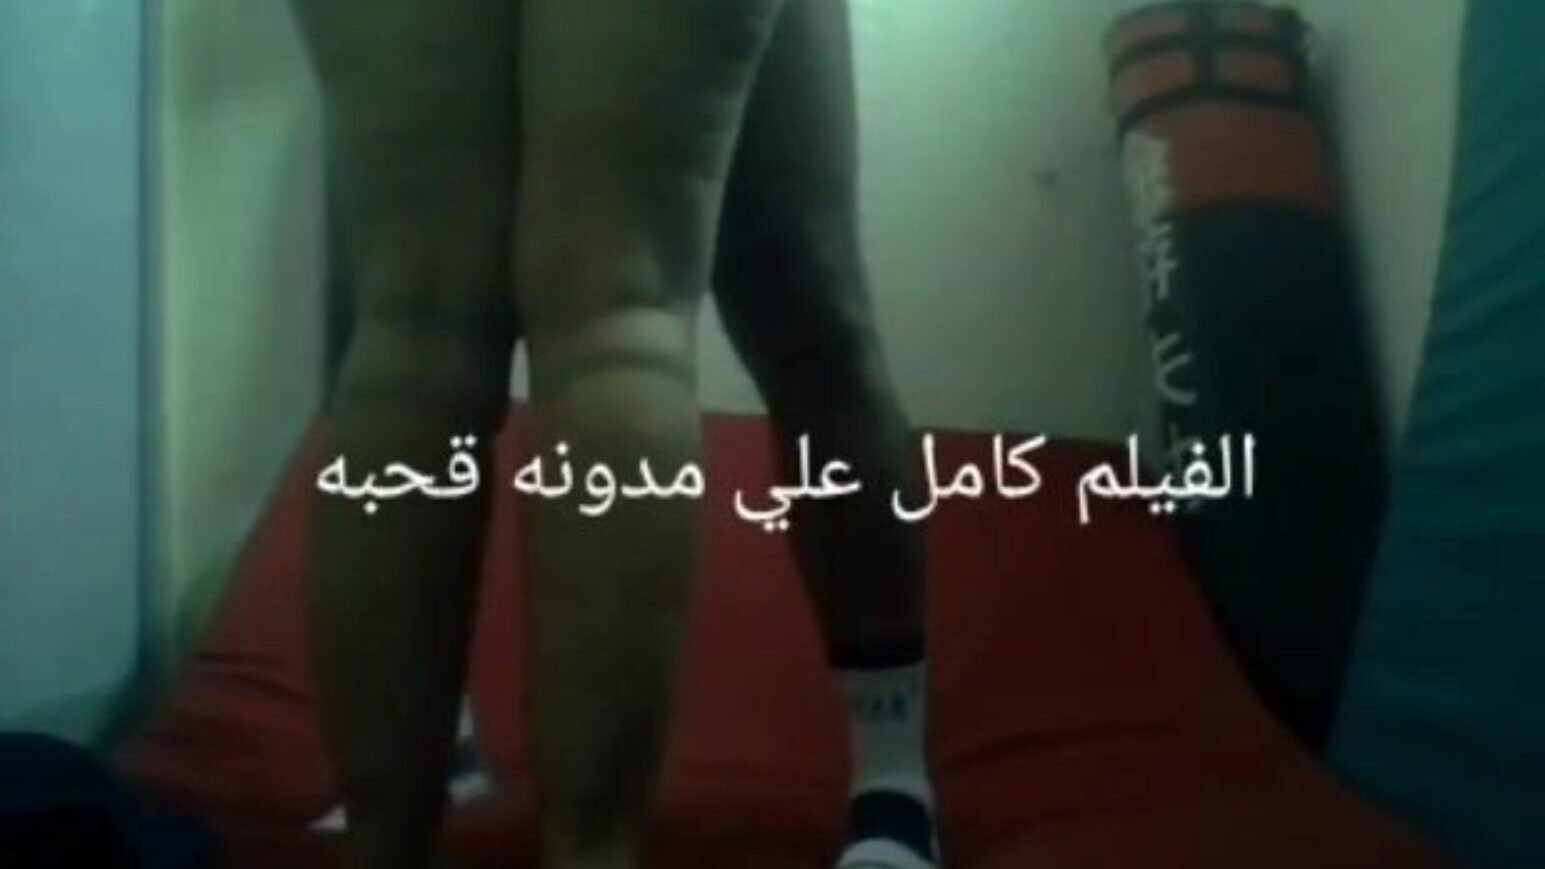 sesso arabo egiziano anteel el mahalla karate grande culo ninfa